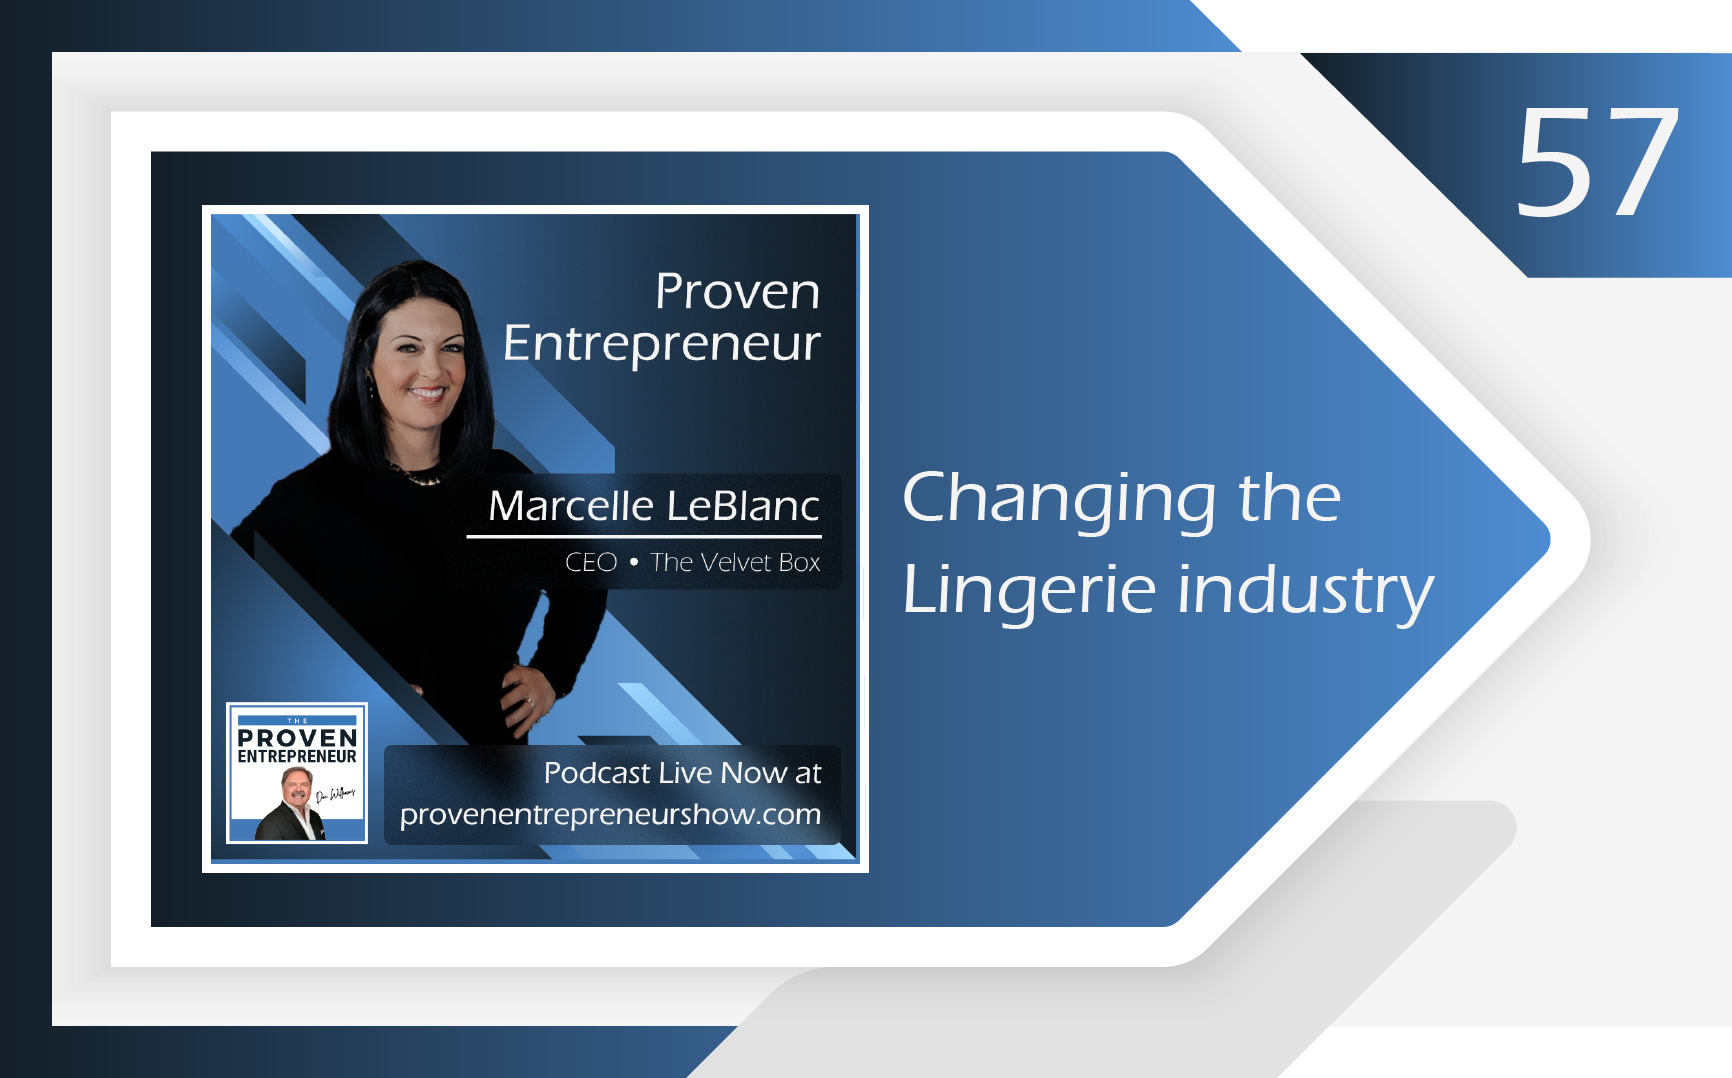 E57 | Entrepreneur Marcelle LeBlanc Shares Her Story